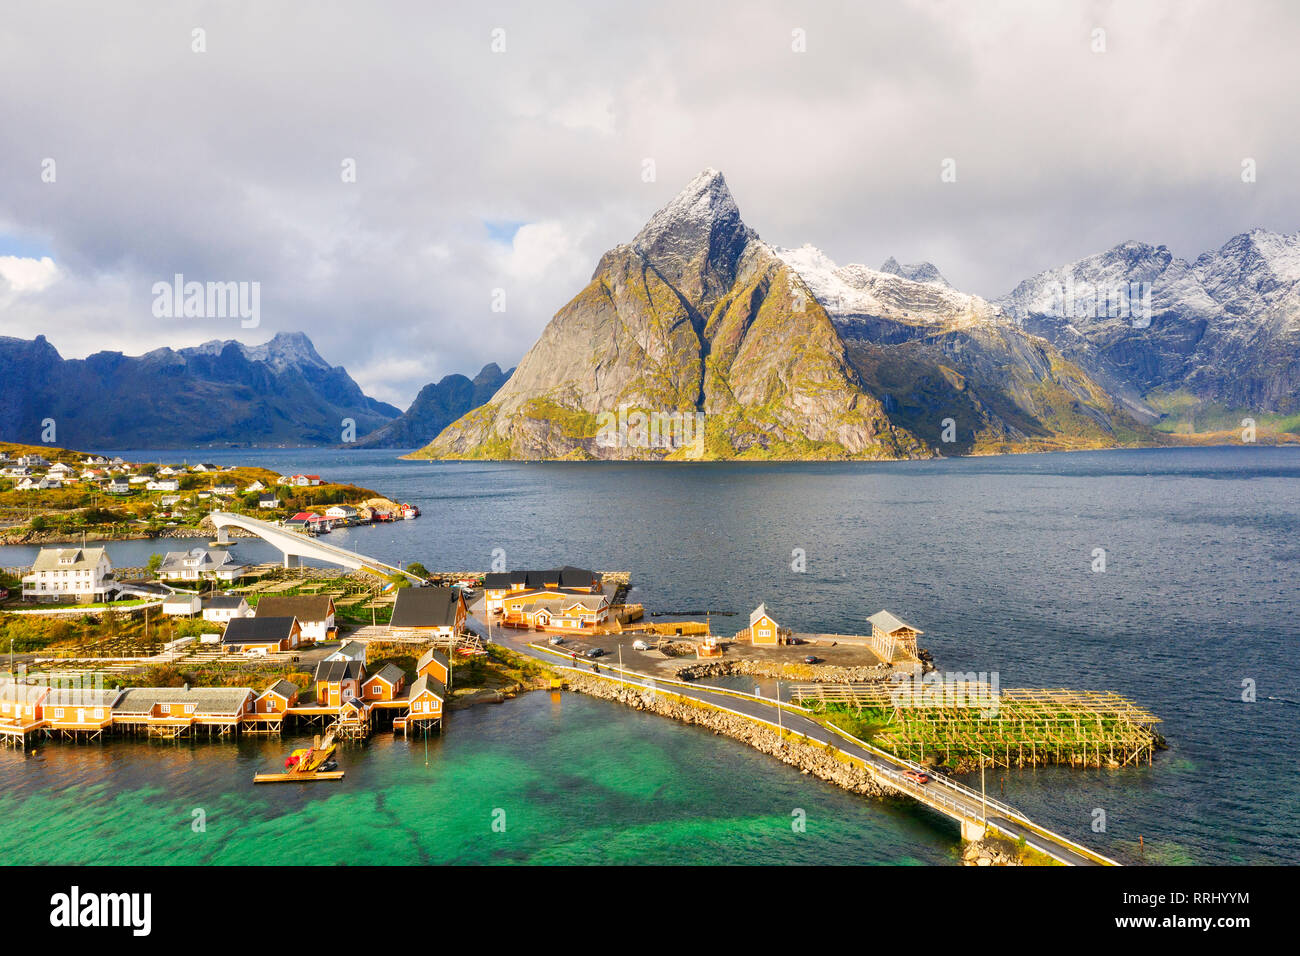 Sakrisoy nei villaggio circondato da montagne e mare cristallino, la Reine, Nordland, Isole Lofoten in Norvegia, Europa Foto Stock